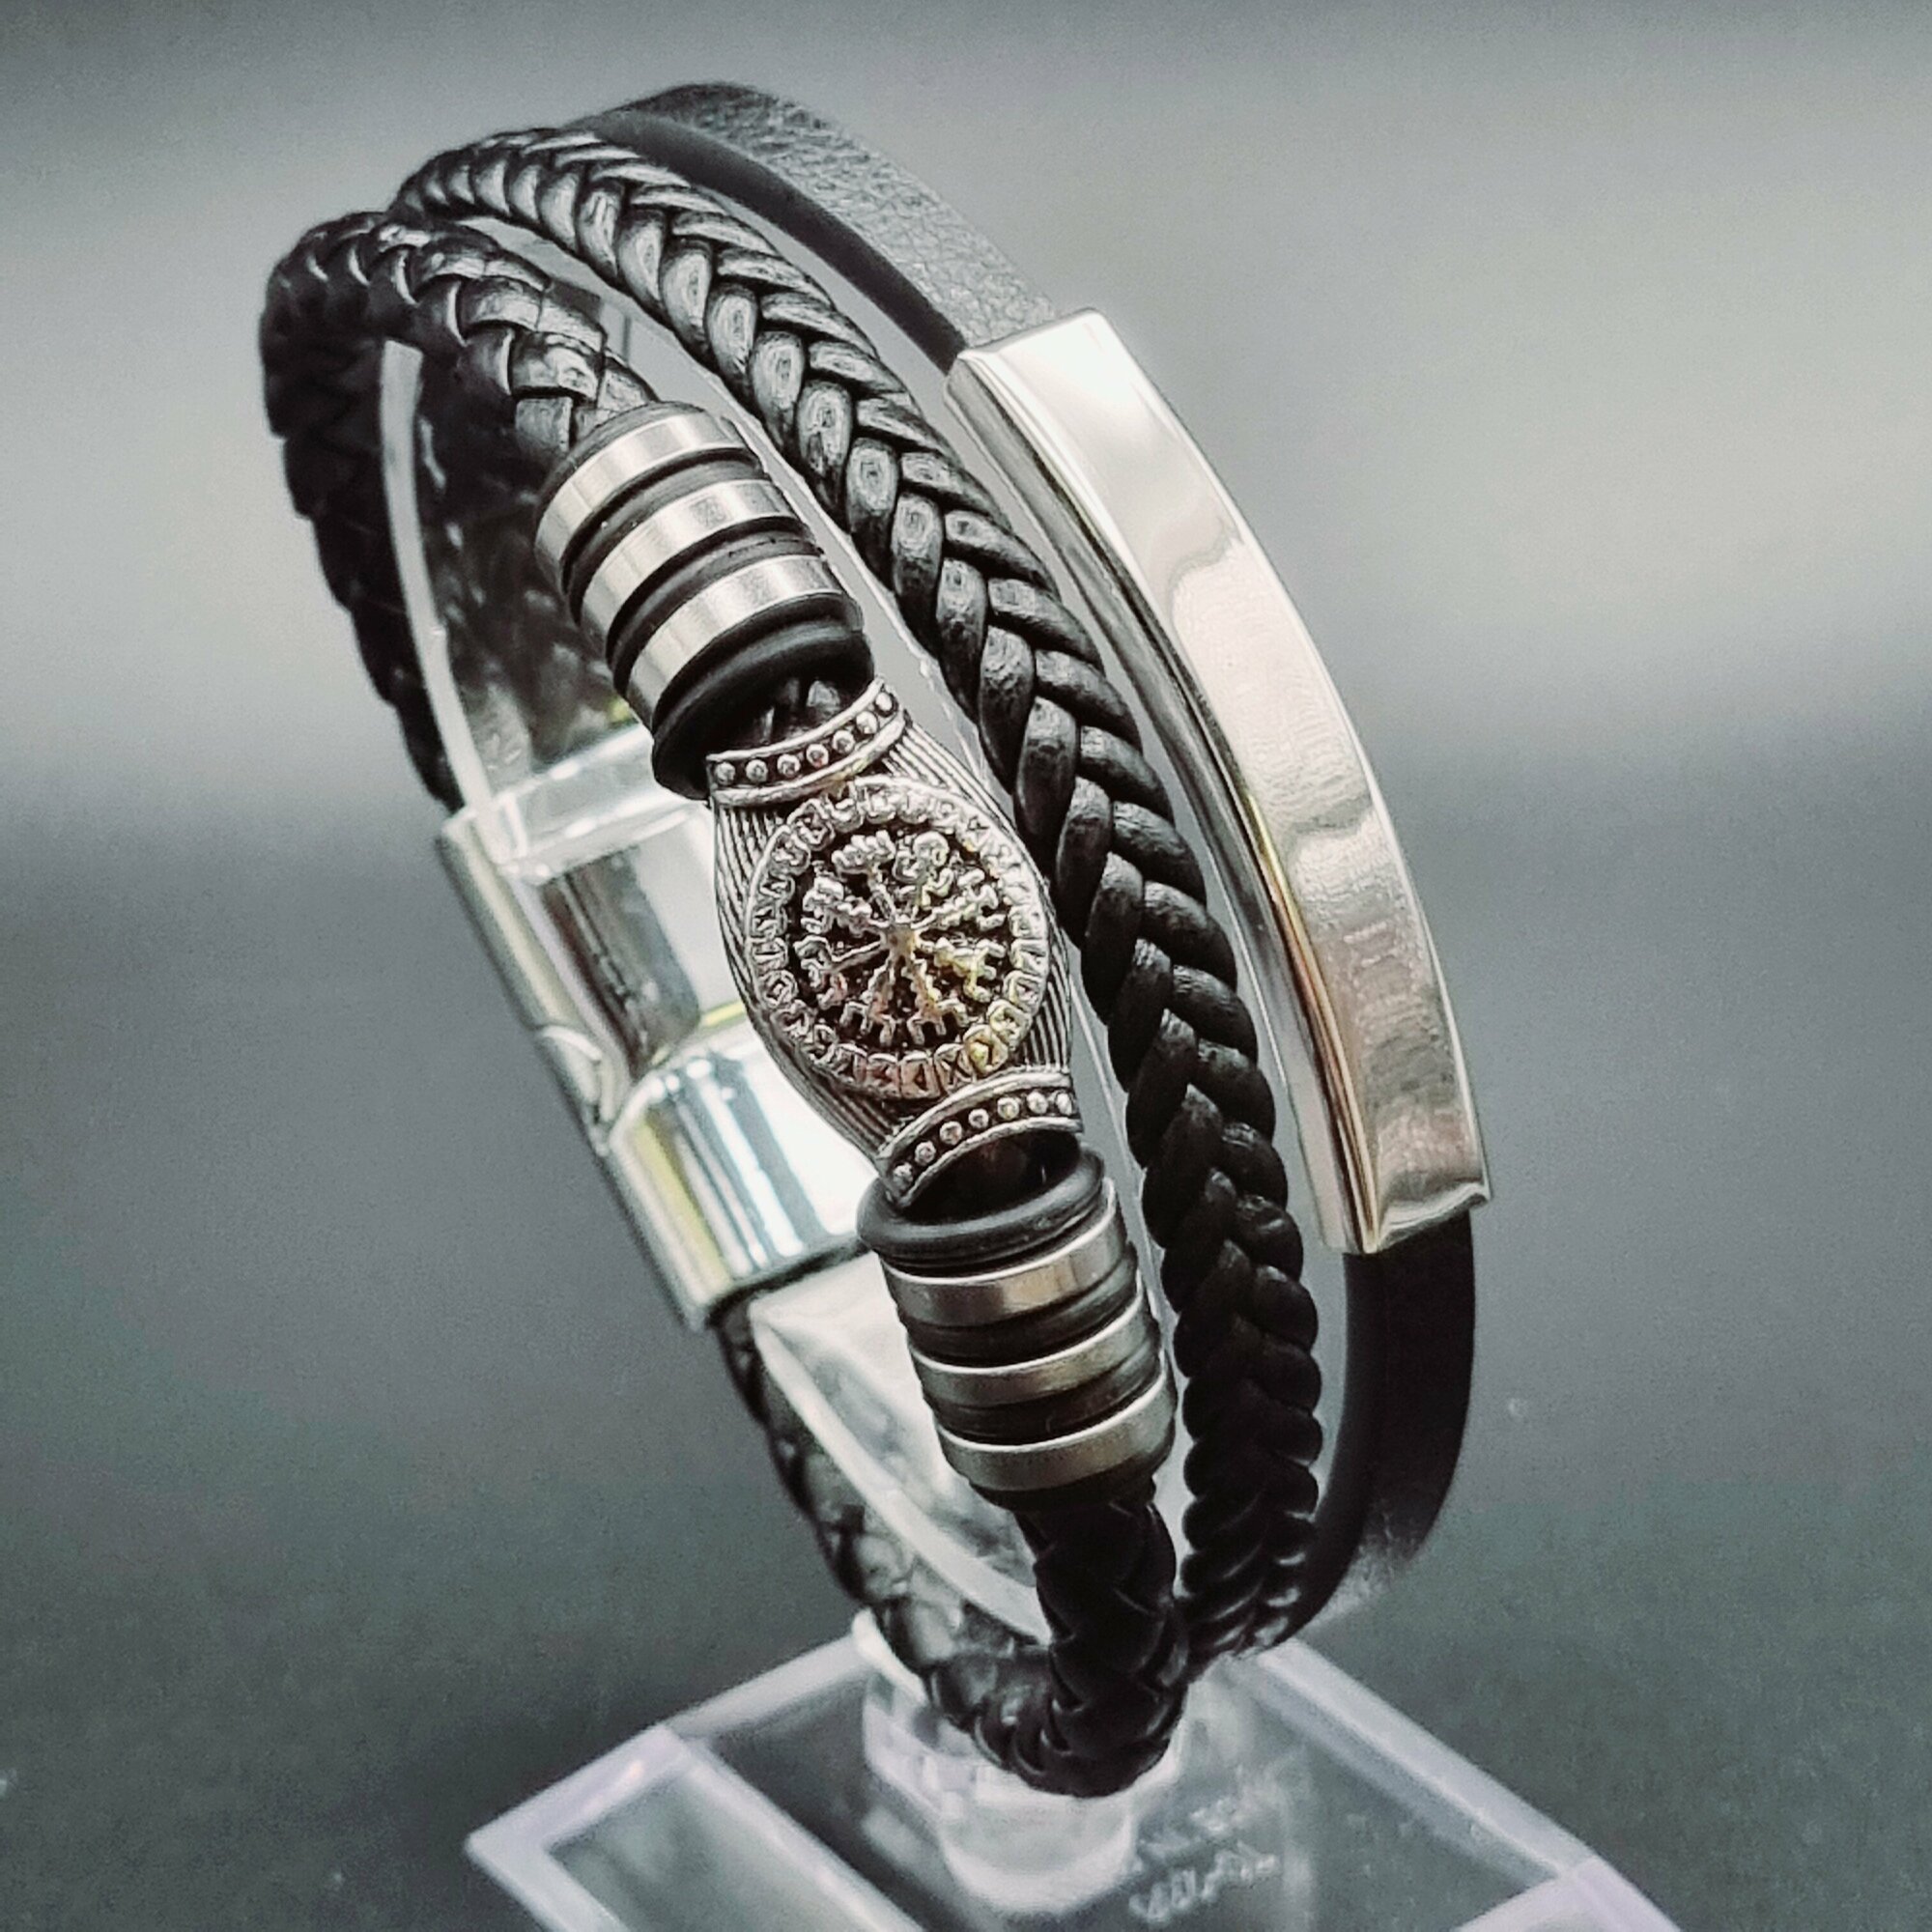 Славянский оберег, плетеный браслет Браслет мужской кожаный, бижутерия, украшение на руку, комплект\набор 4 в 1, металл